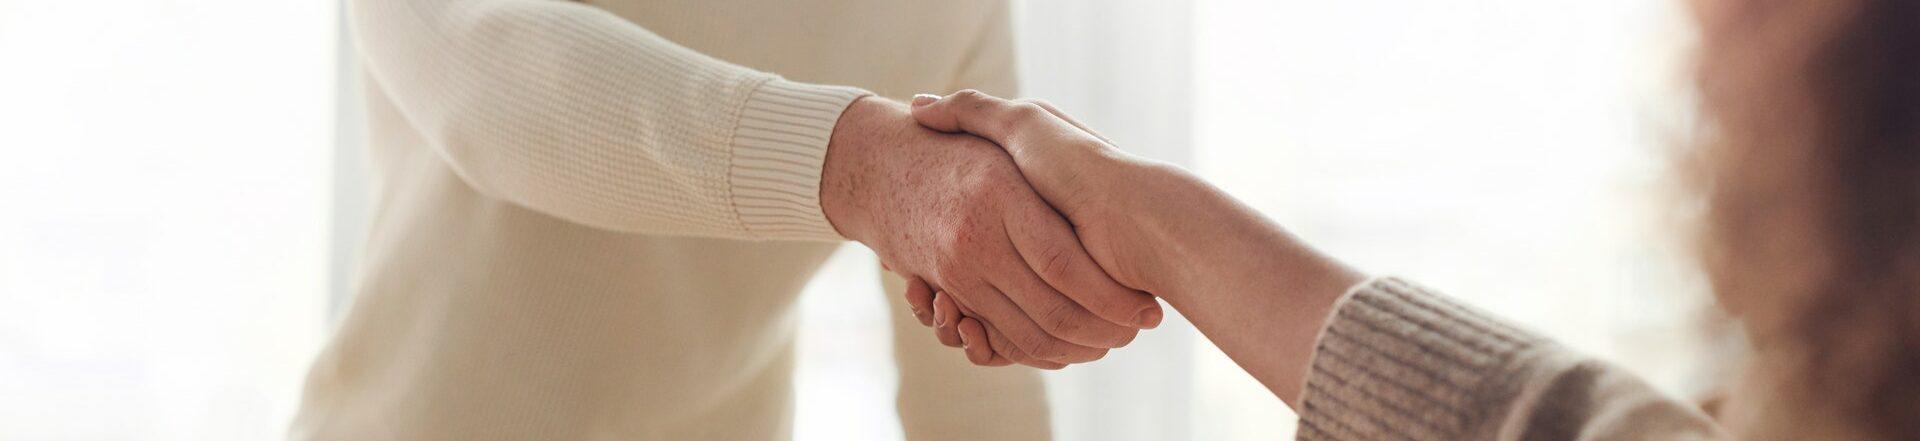 Deux personnes se serrant la main après avoir passé un accord